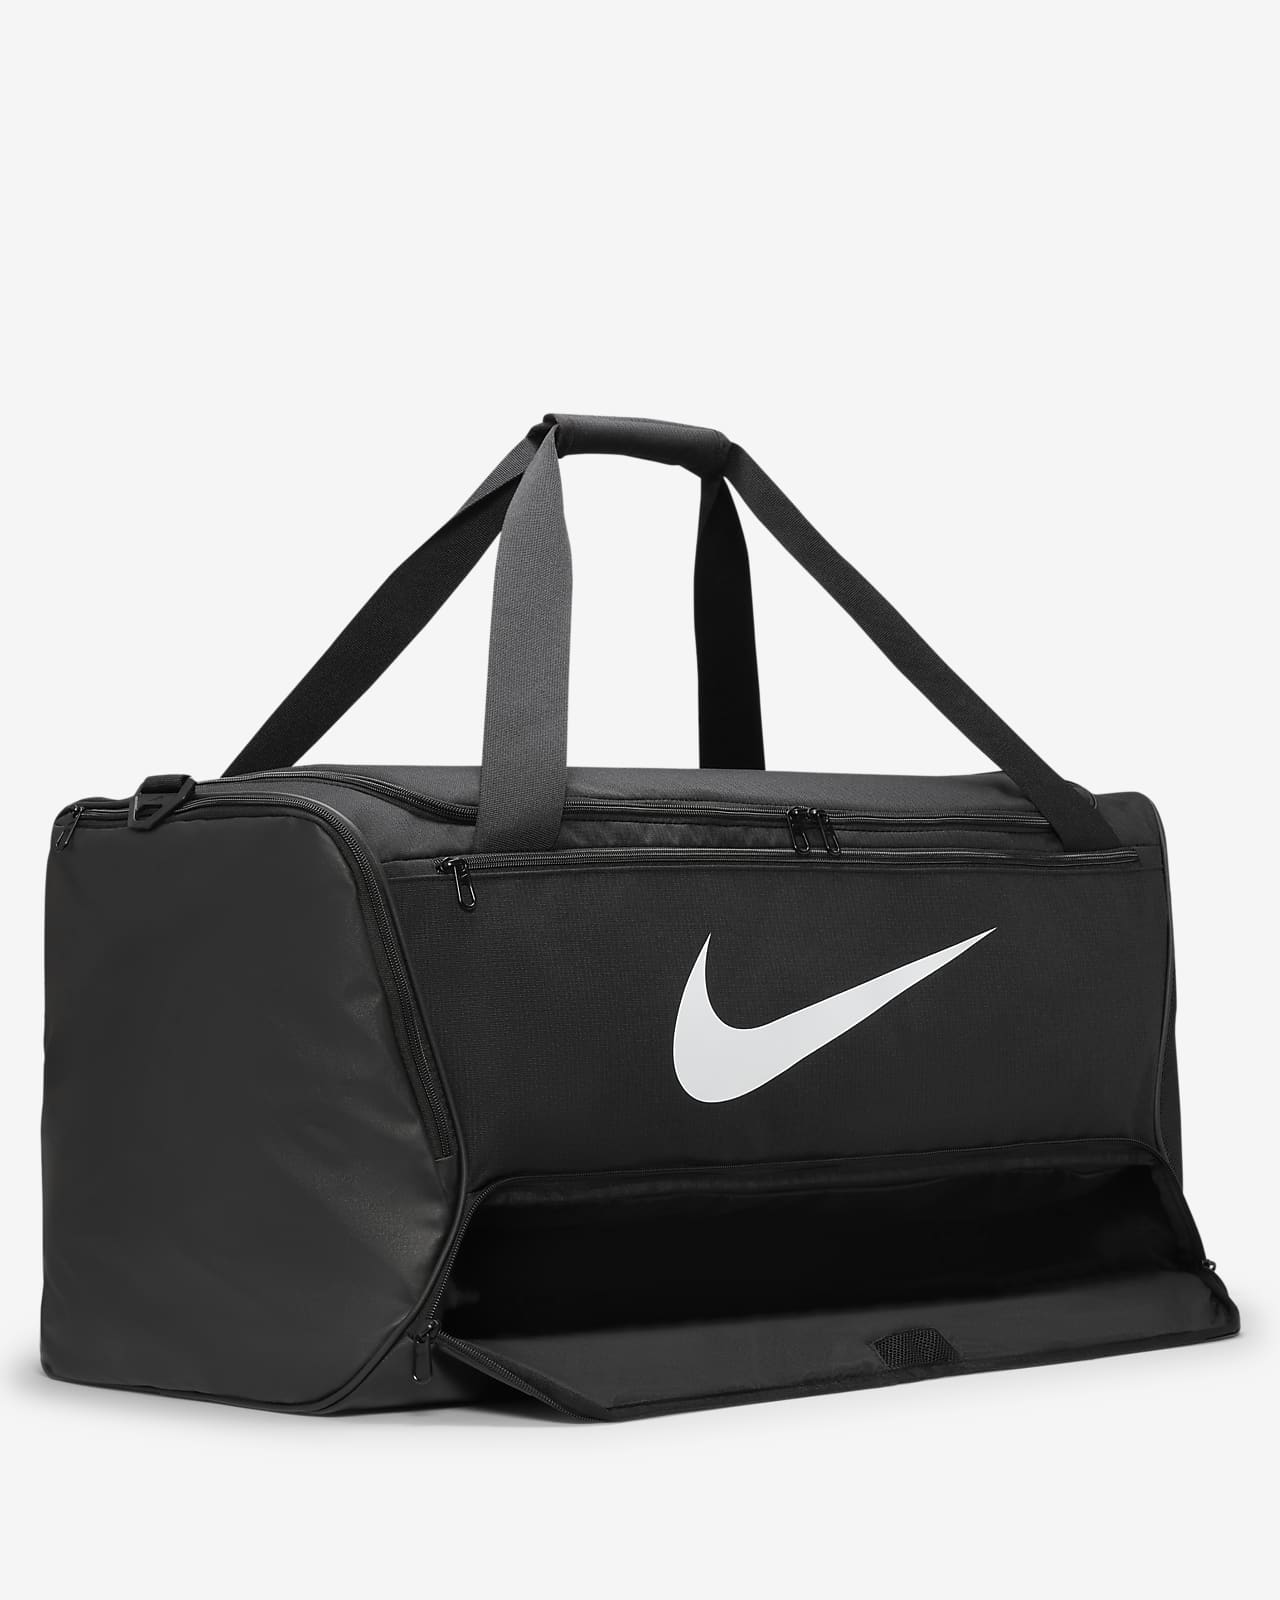 Nike Brasilia 9.5 GYM SACK Bags Navy Black Running Shoes Training Bag  DM3978-010